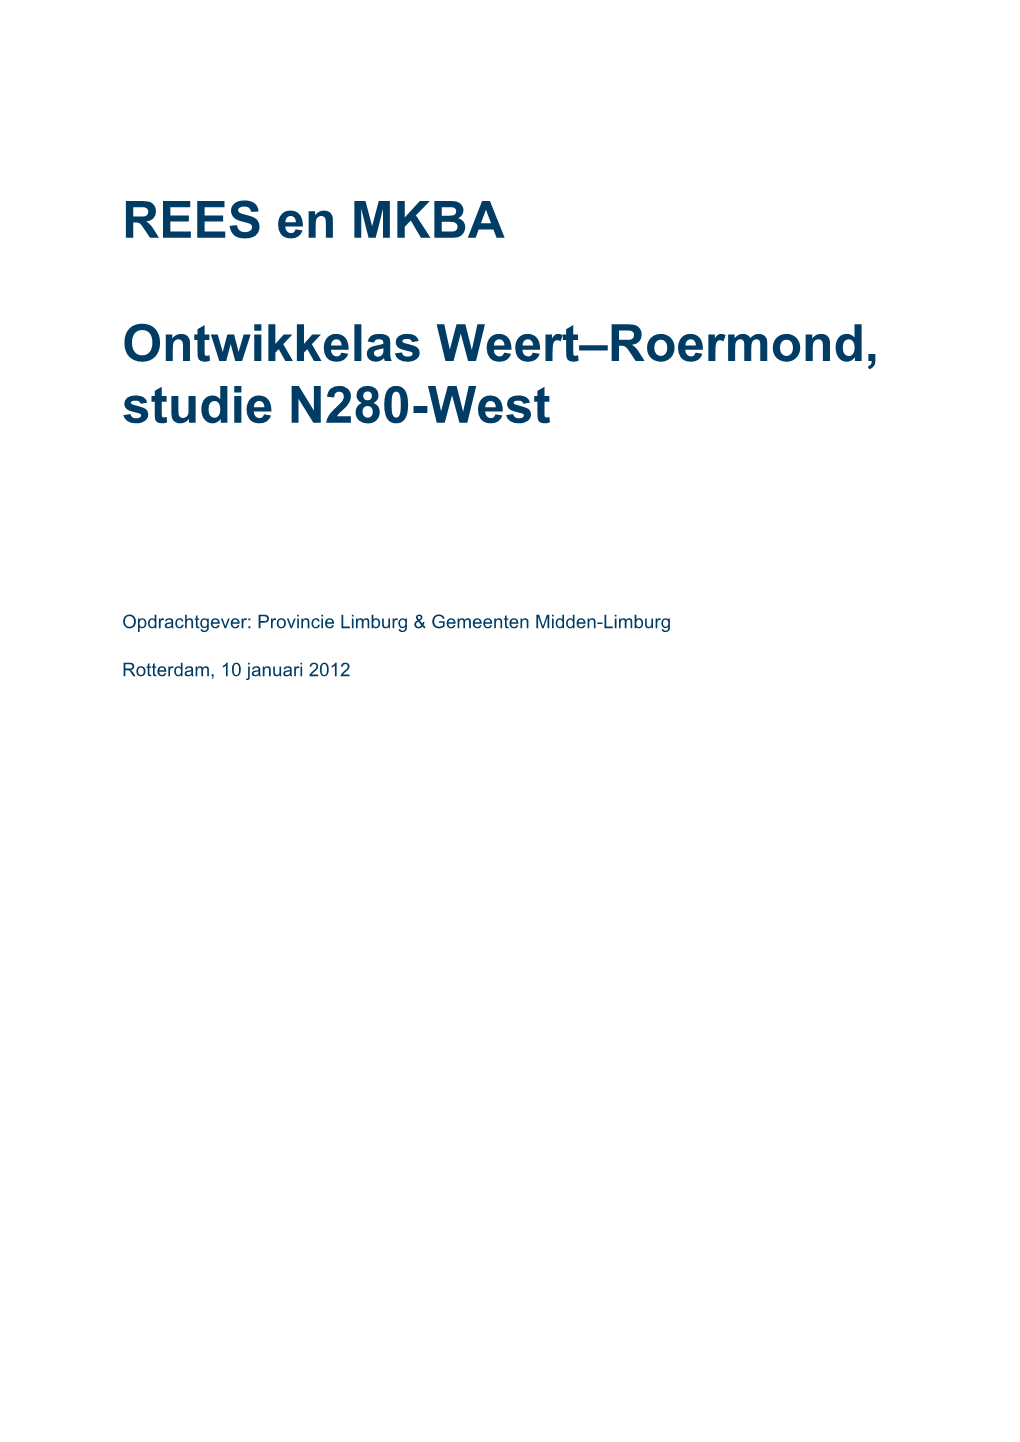 REES En MKBA Ontwikkelas Weert–Roermond, Studie N280-West